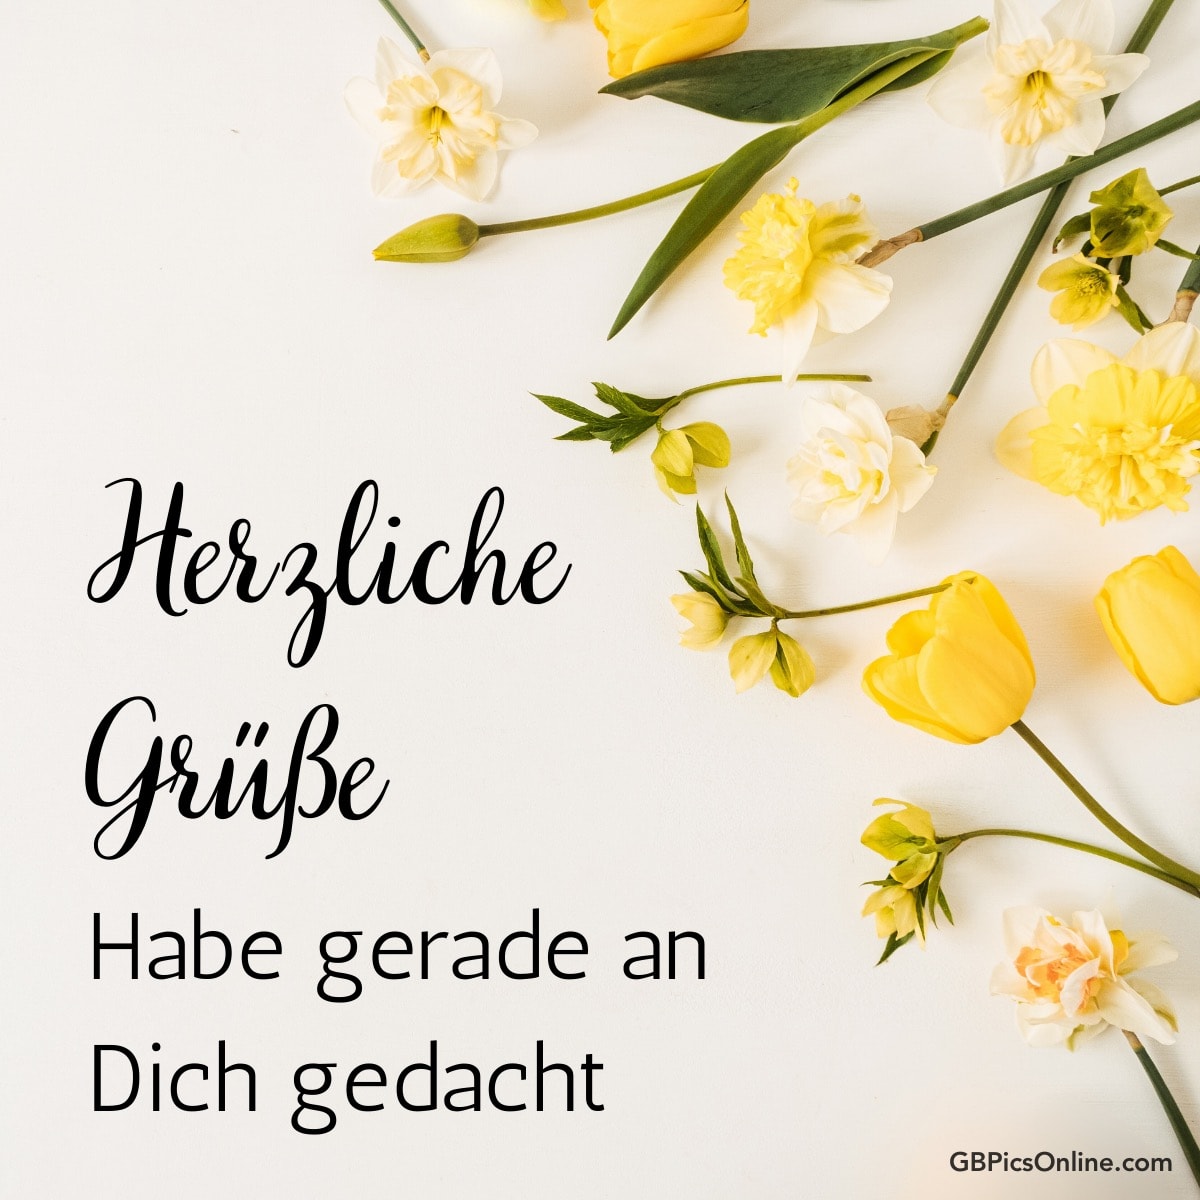 Gelbe Tulpen und Narzissen mit der Aufschrift „Herzliche Grüße, Habe gerade an Dich gedacht“